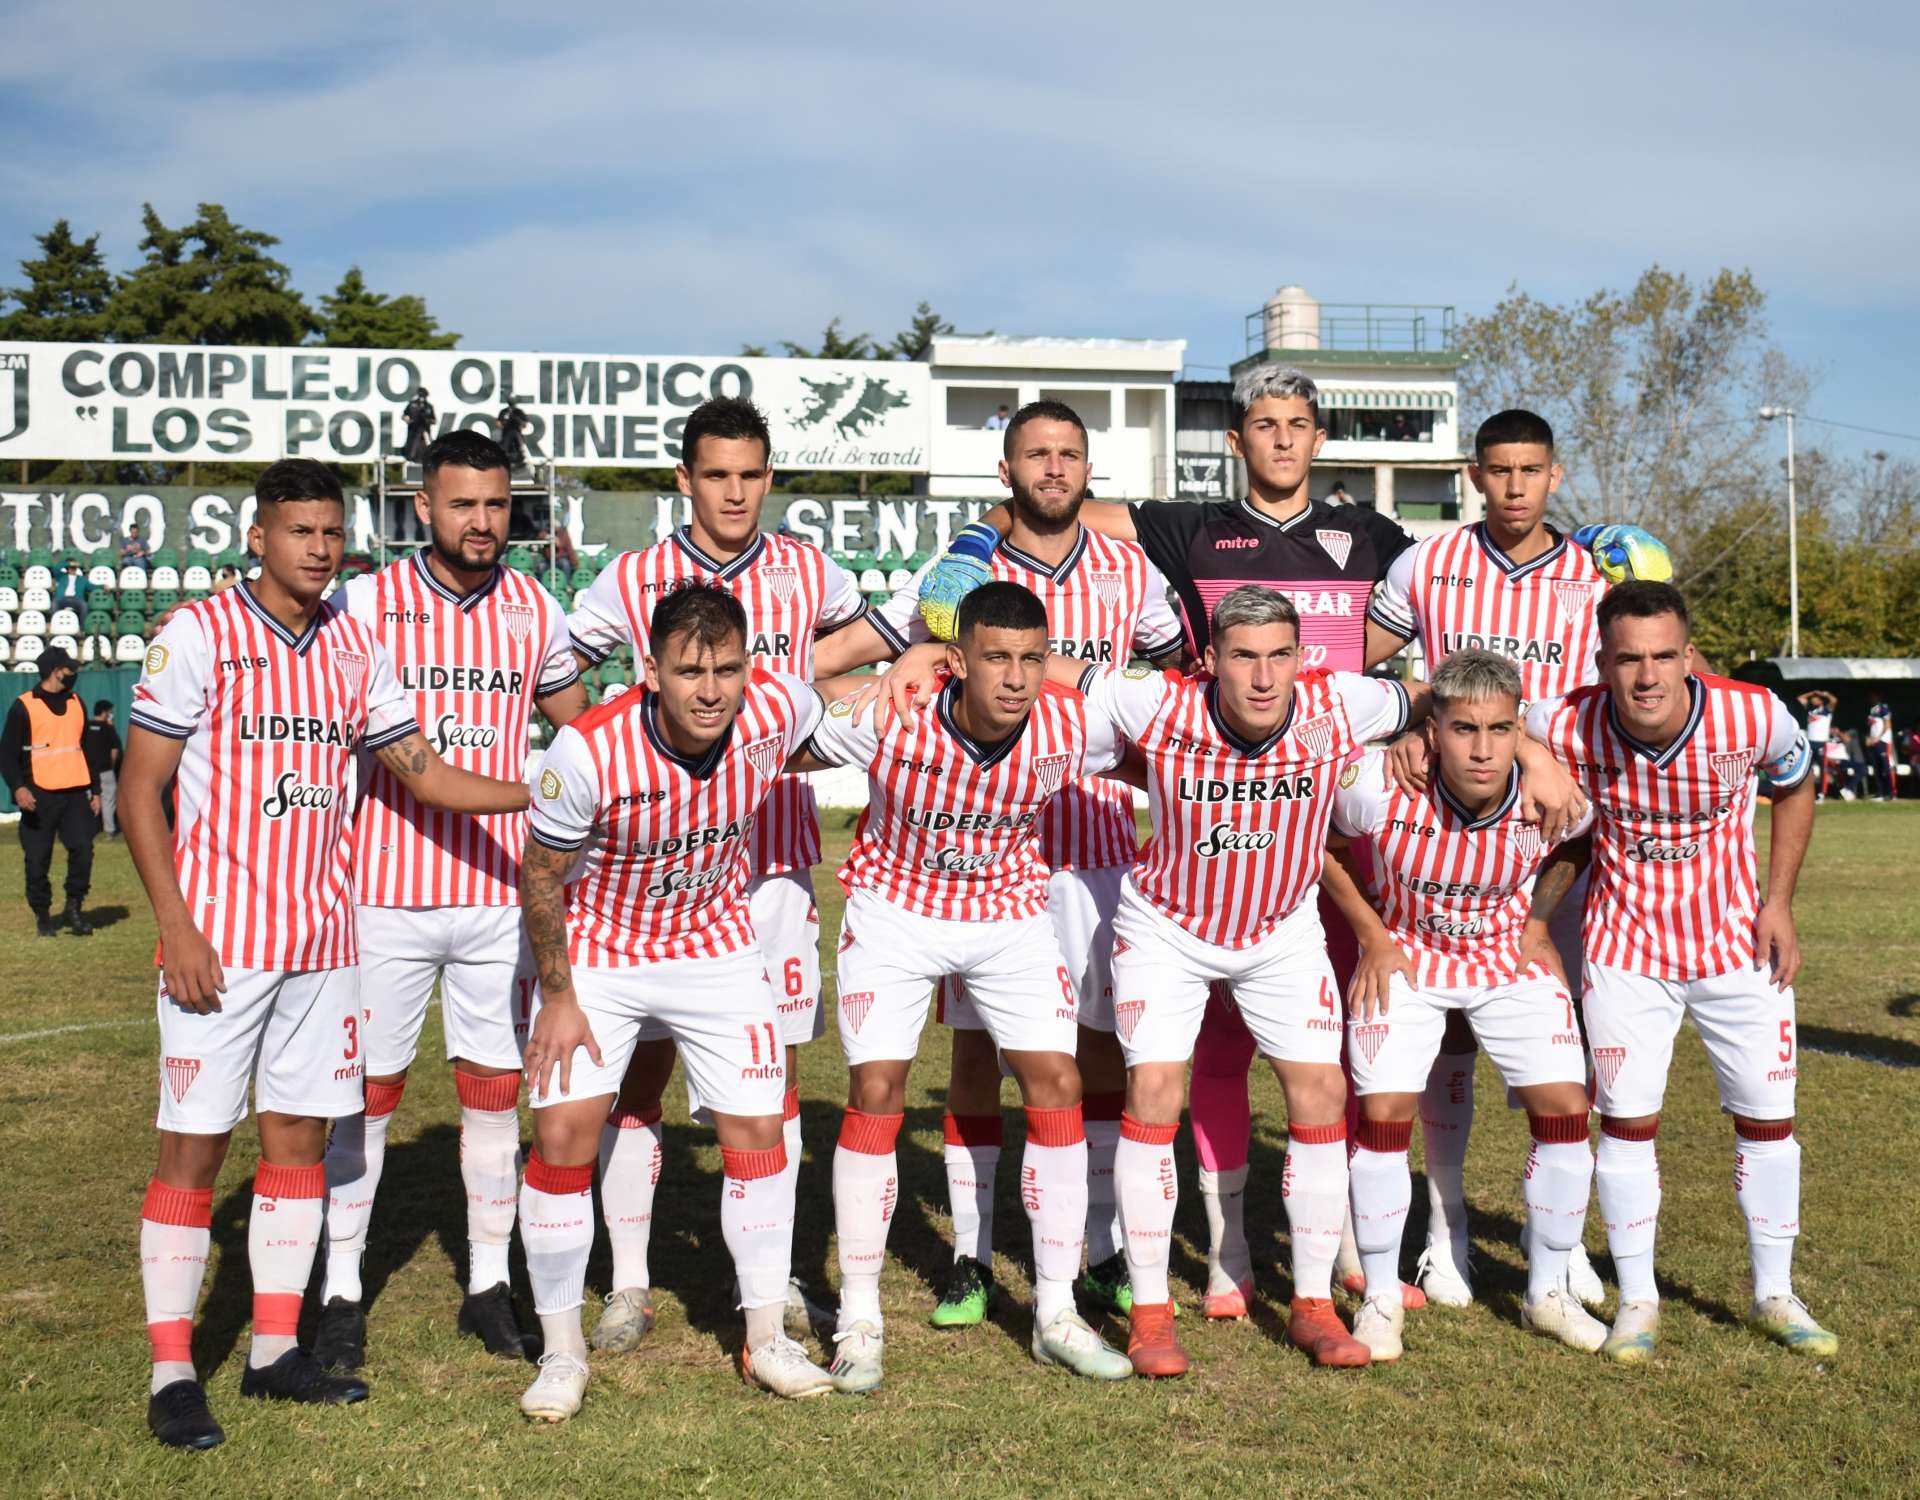 Talleres (R.E) - Cañuelas F.C: El Albirrojo ganó y sigue firme en la cima  del torneo